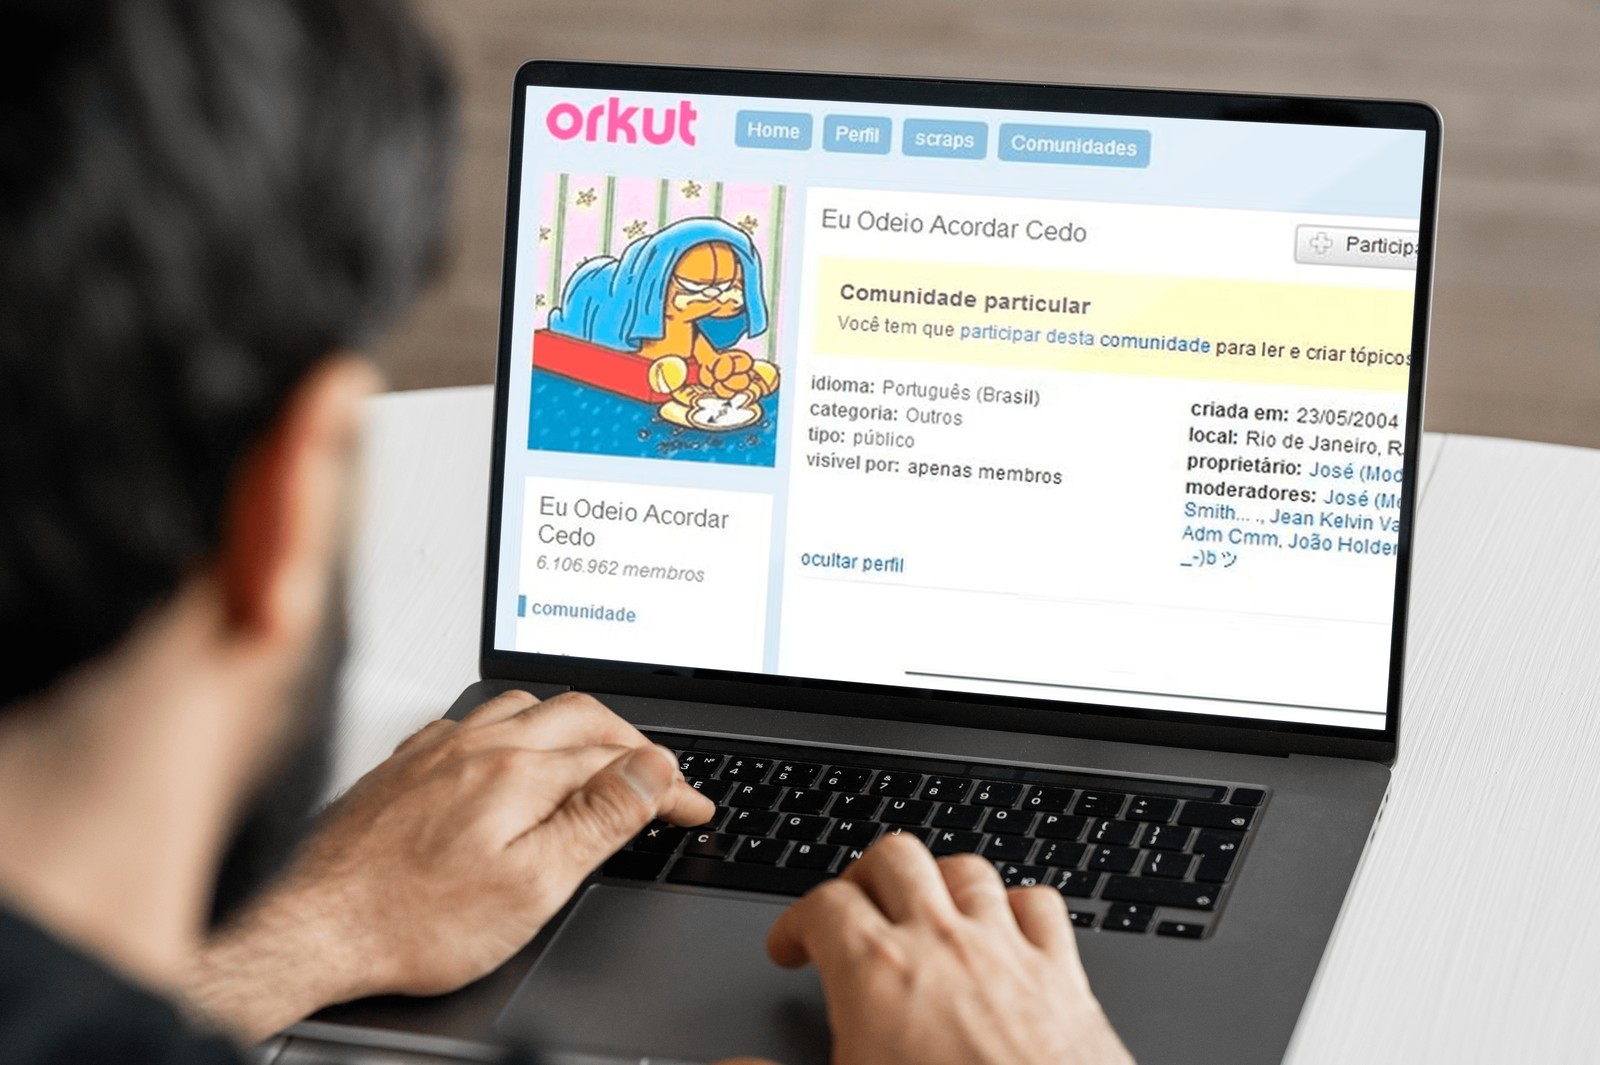 Com mais de 6 milhões de membros, "Eu odeio acordar cedo" era uma das comunidades mais populares do Orkut